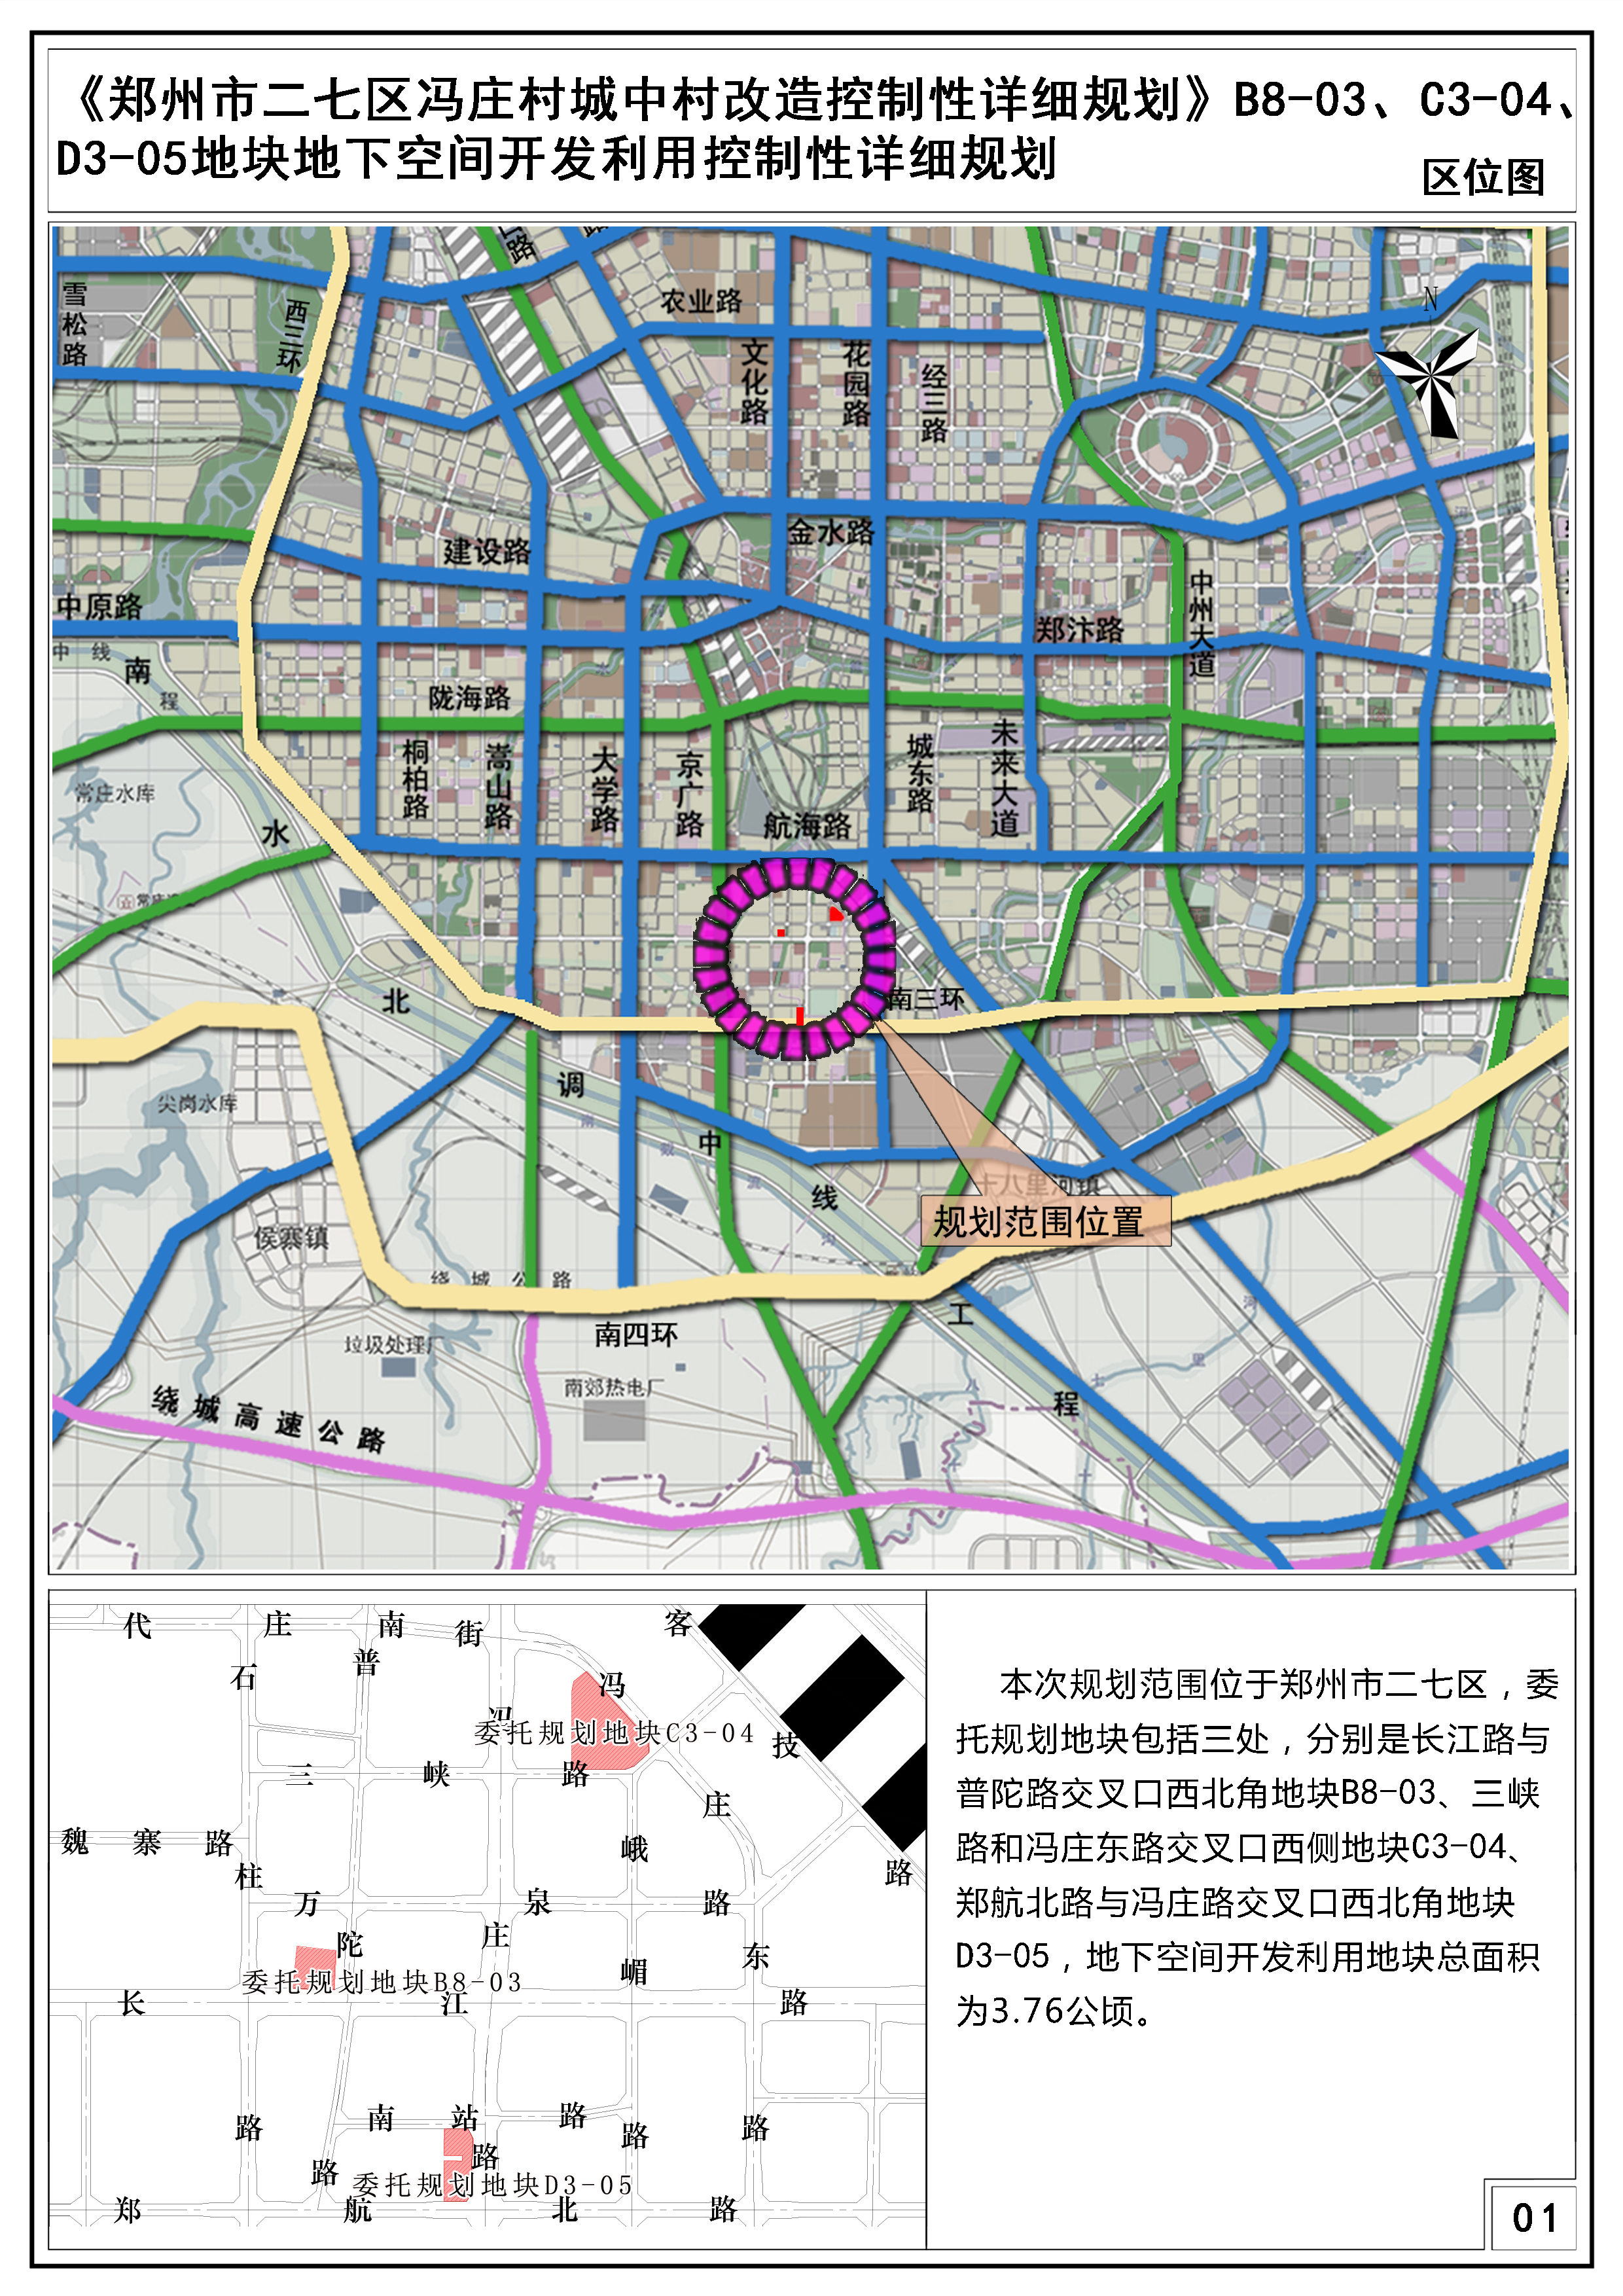 《郑州市二七区冯庄村城中村改造控制性详细规划》第B8-03等3个地块地下空间开发利用控制性详细规划